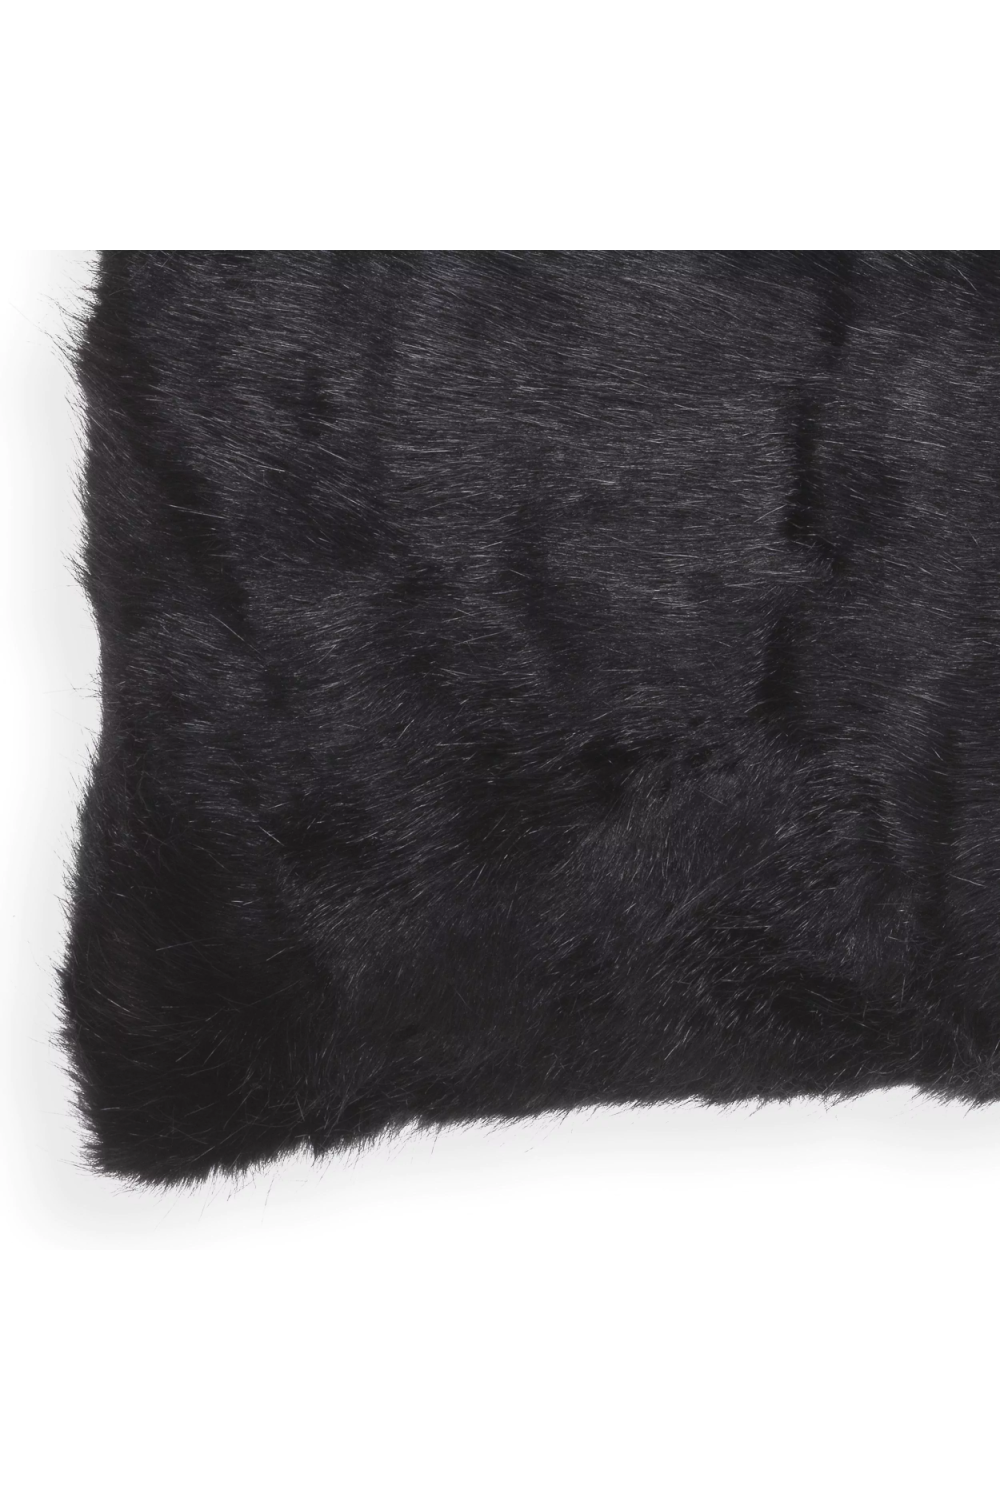 Fur Throw Pillow | Eichholtz Alaska | Oroa.com